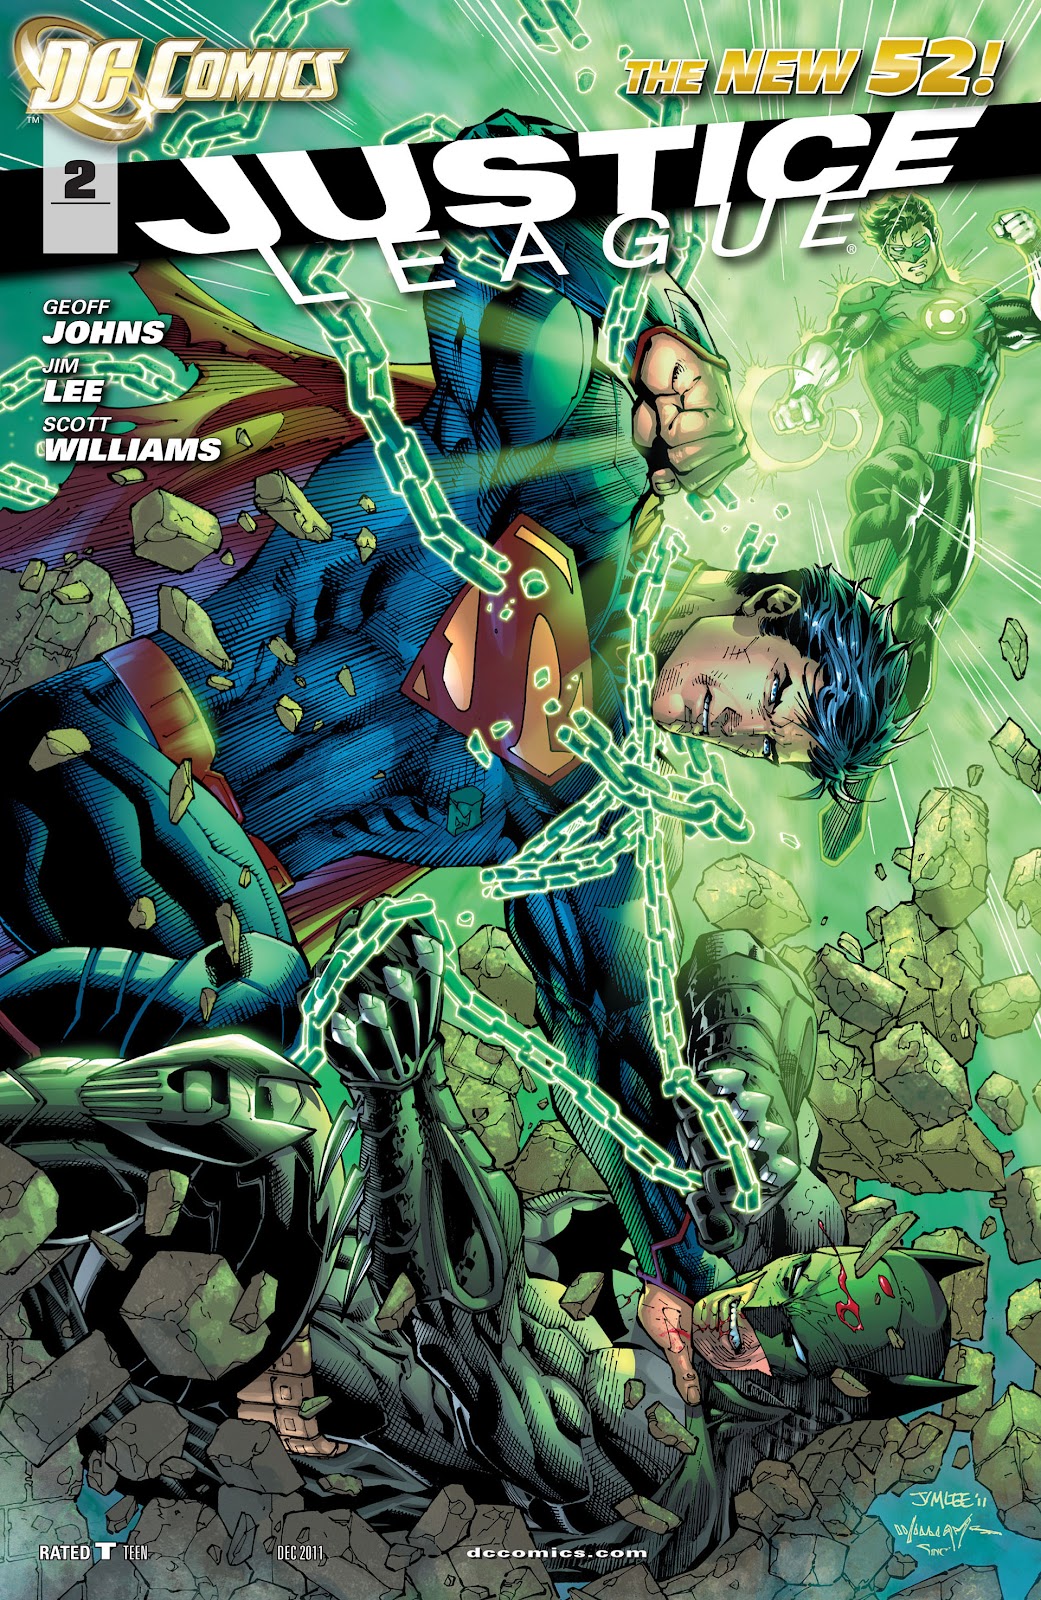 Portada de Justice League #2 de Geoff Johns en donde vemos a Superman golpeando a Batman. 